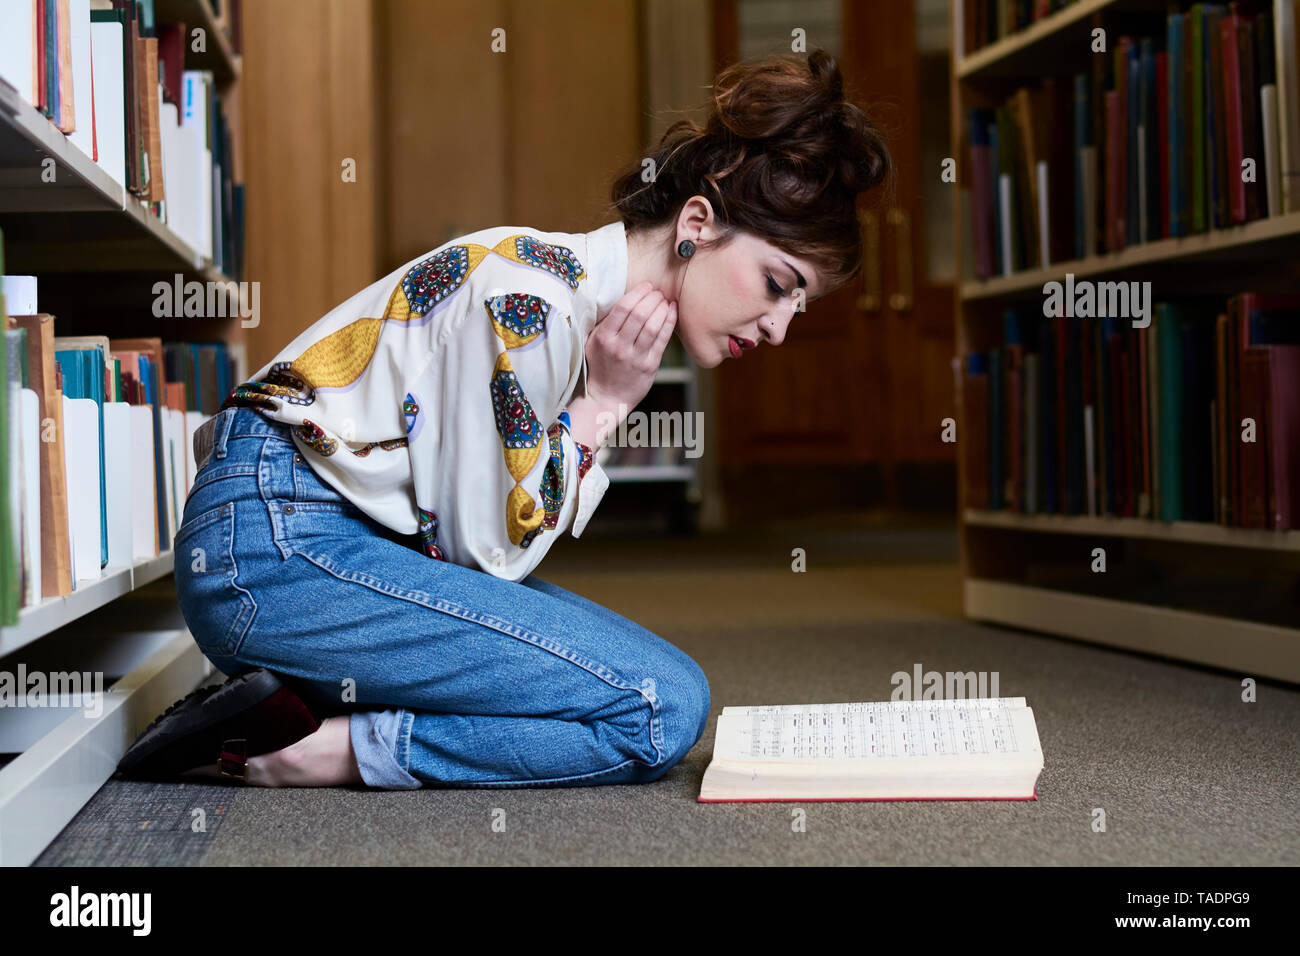 Female student reading book dans une bibliothèque publique Banque D'Images